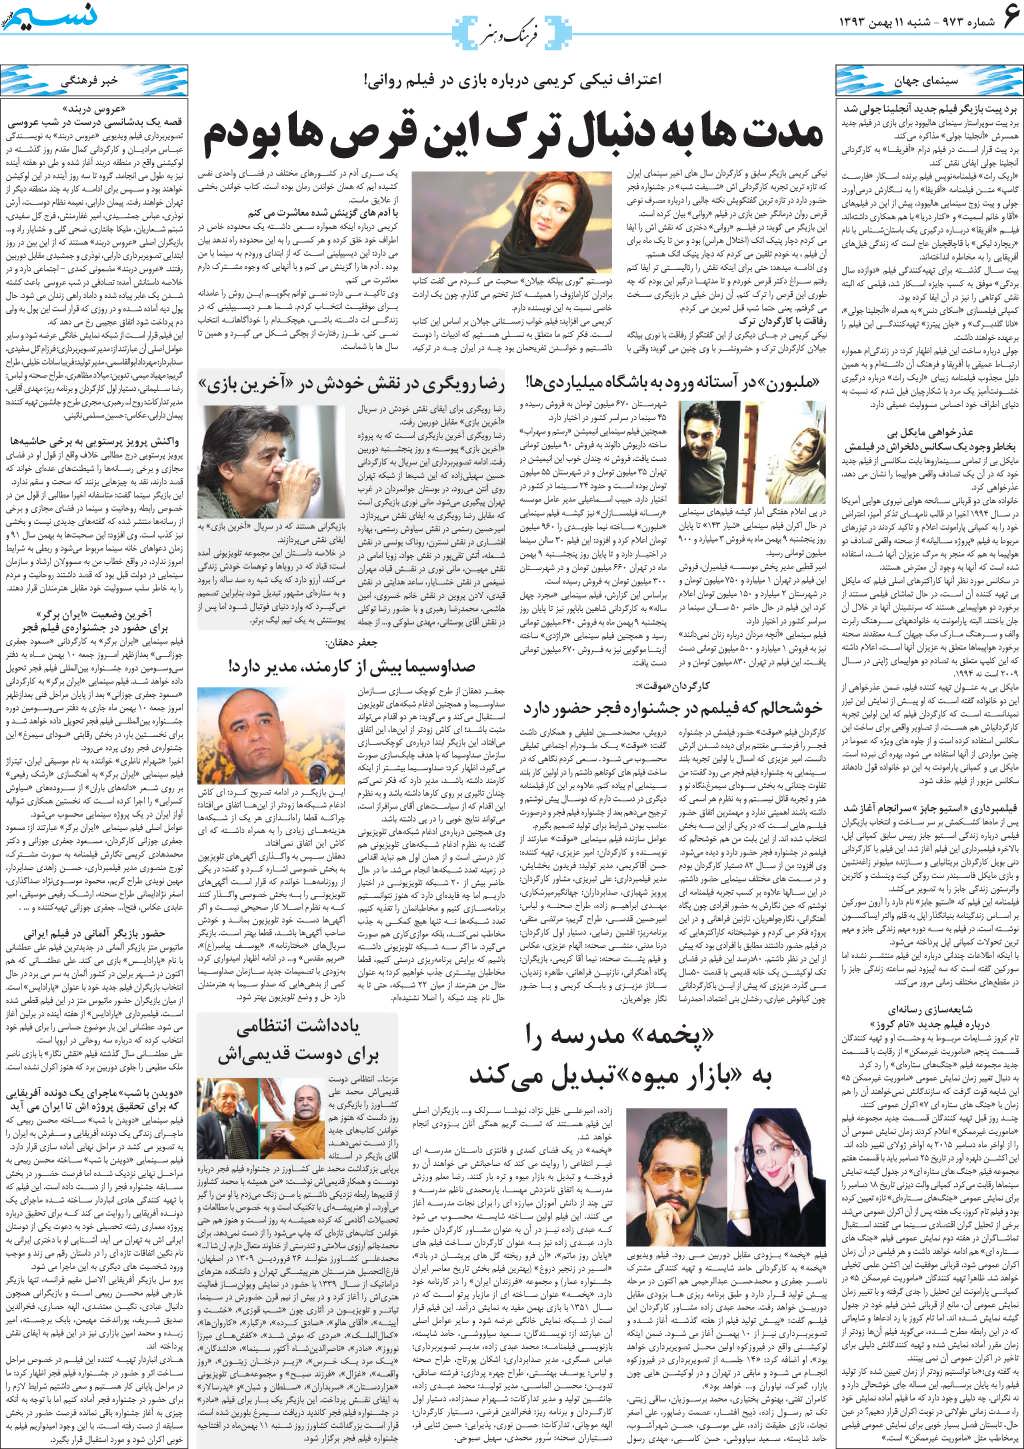 صفحه فرهنگ و هنر روزنامه نسیم شماره 973